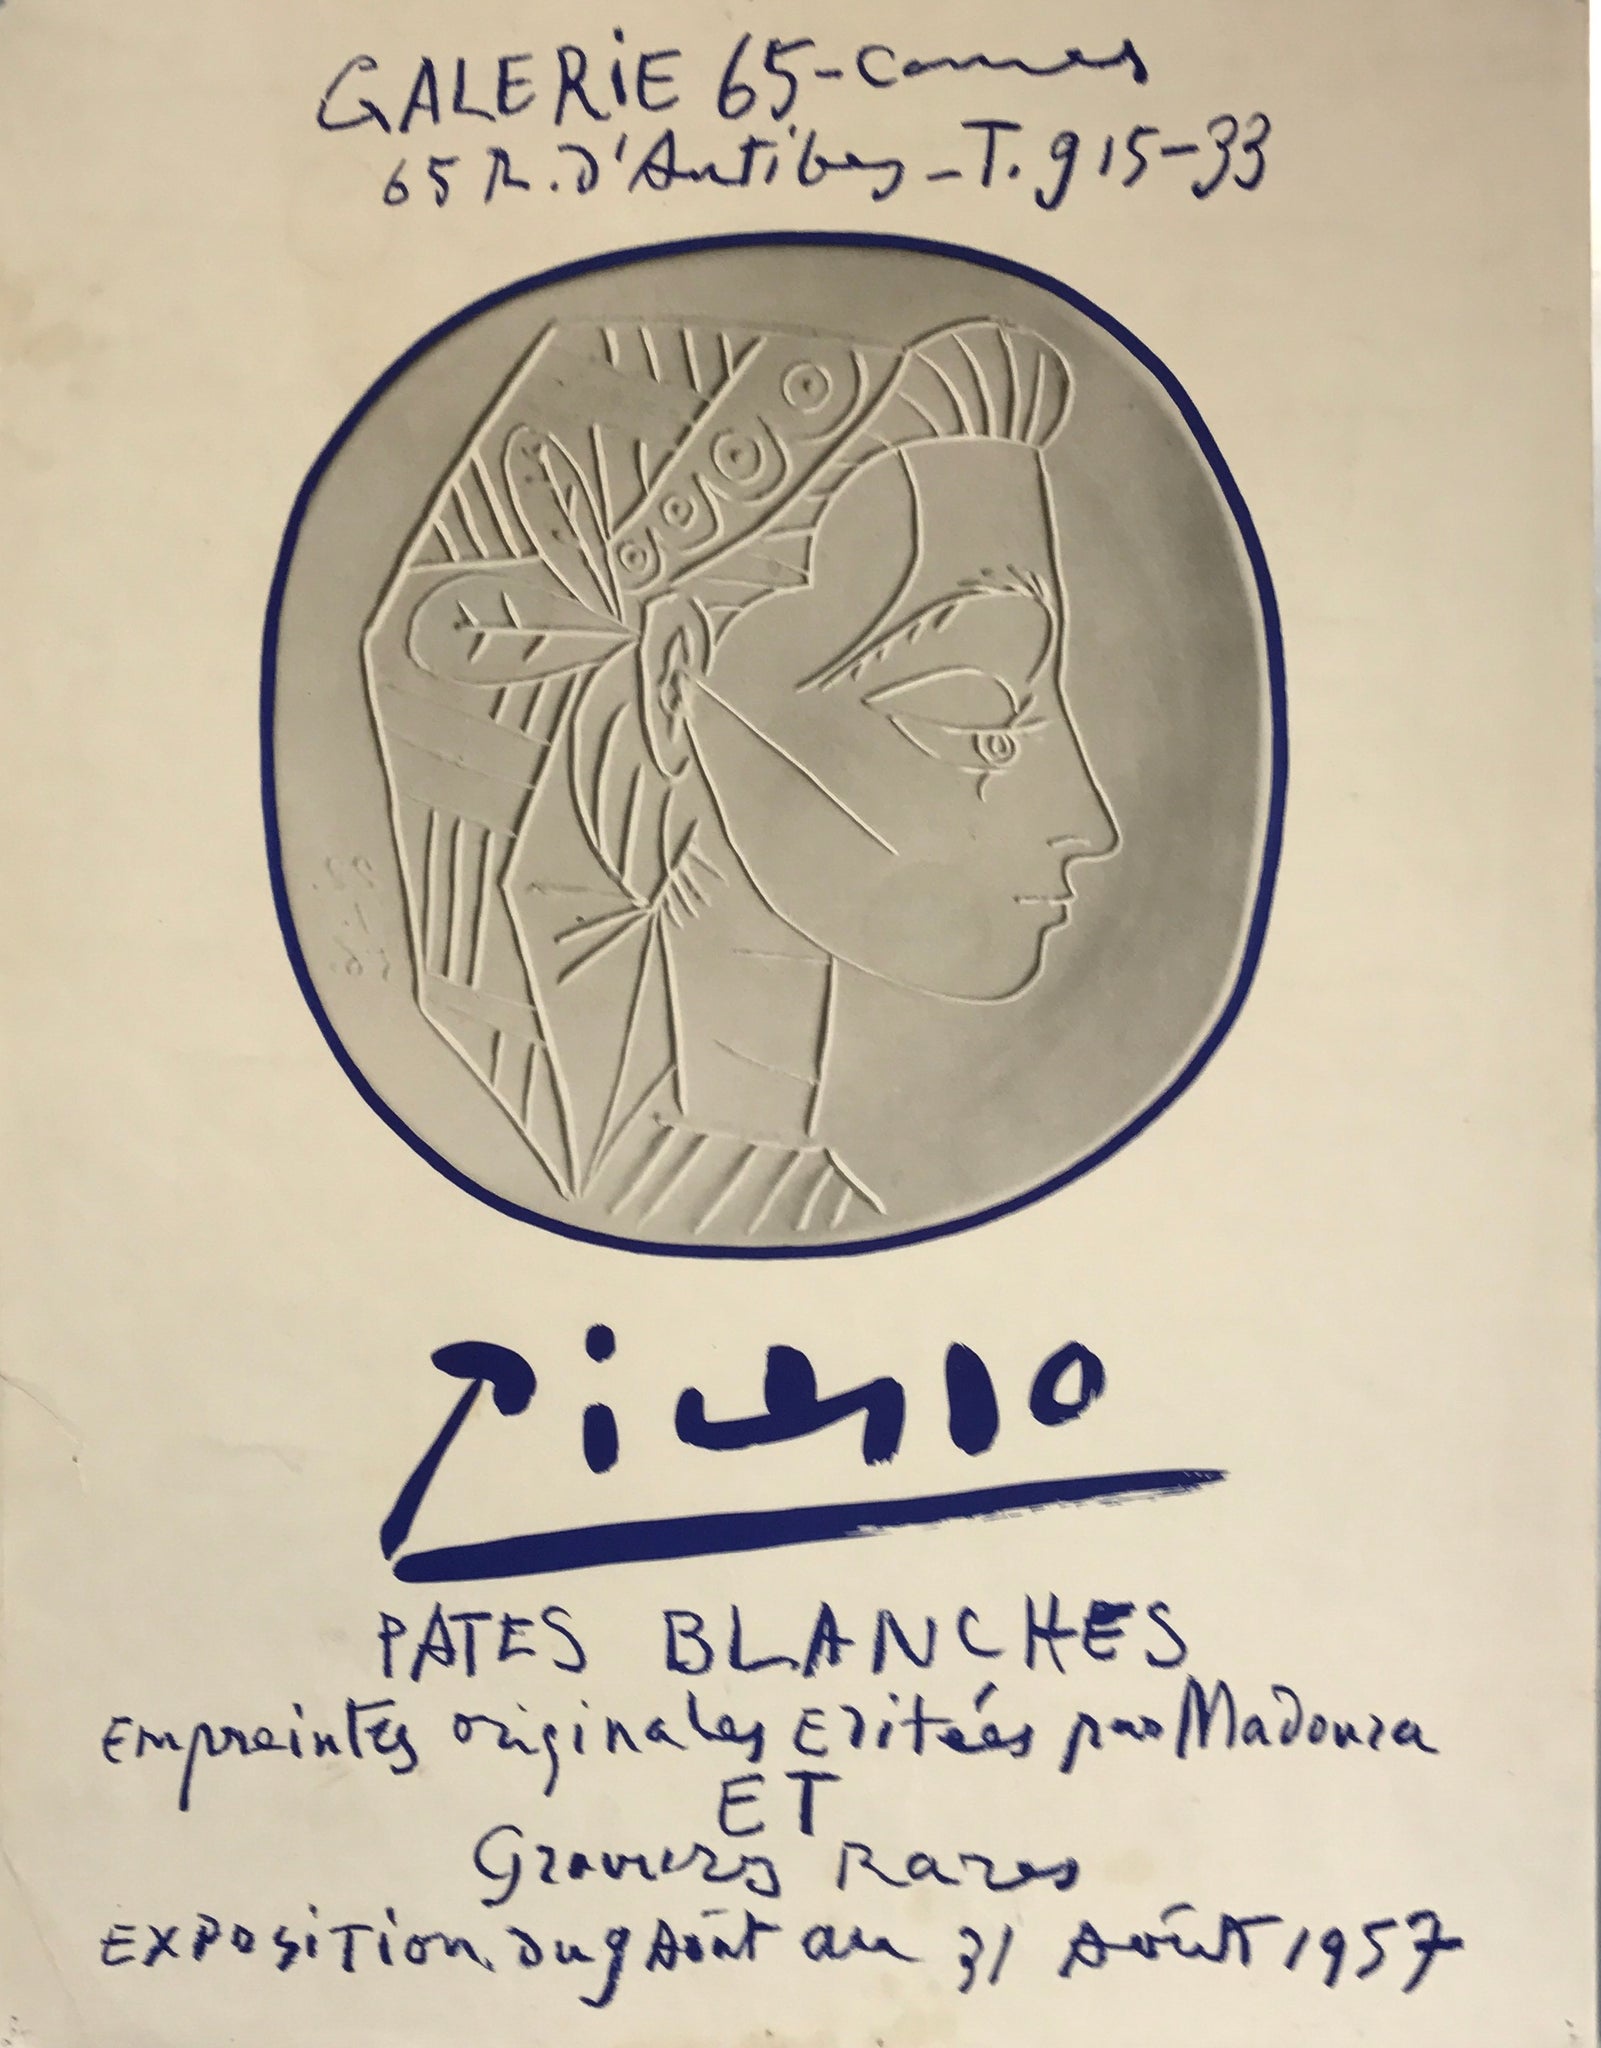 Affiche Galerie 65 Cannes - Pates blanches Par Pablo Picasso, 1957   Affiche réalisée pour l'expostion " Pates Blanche " à la Galerie 65 - Cannes   Empreintes originales et gravures rares, août 1957